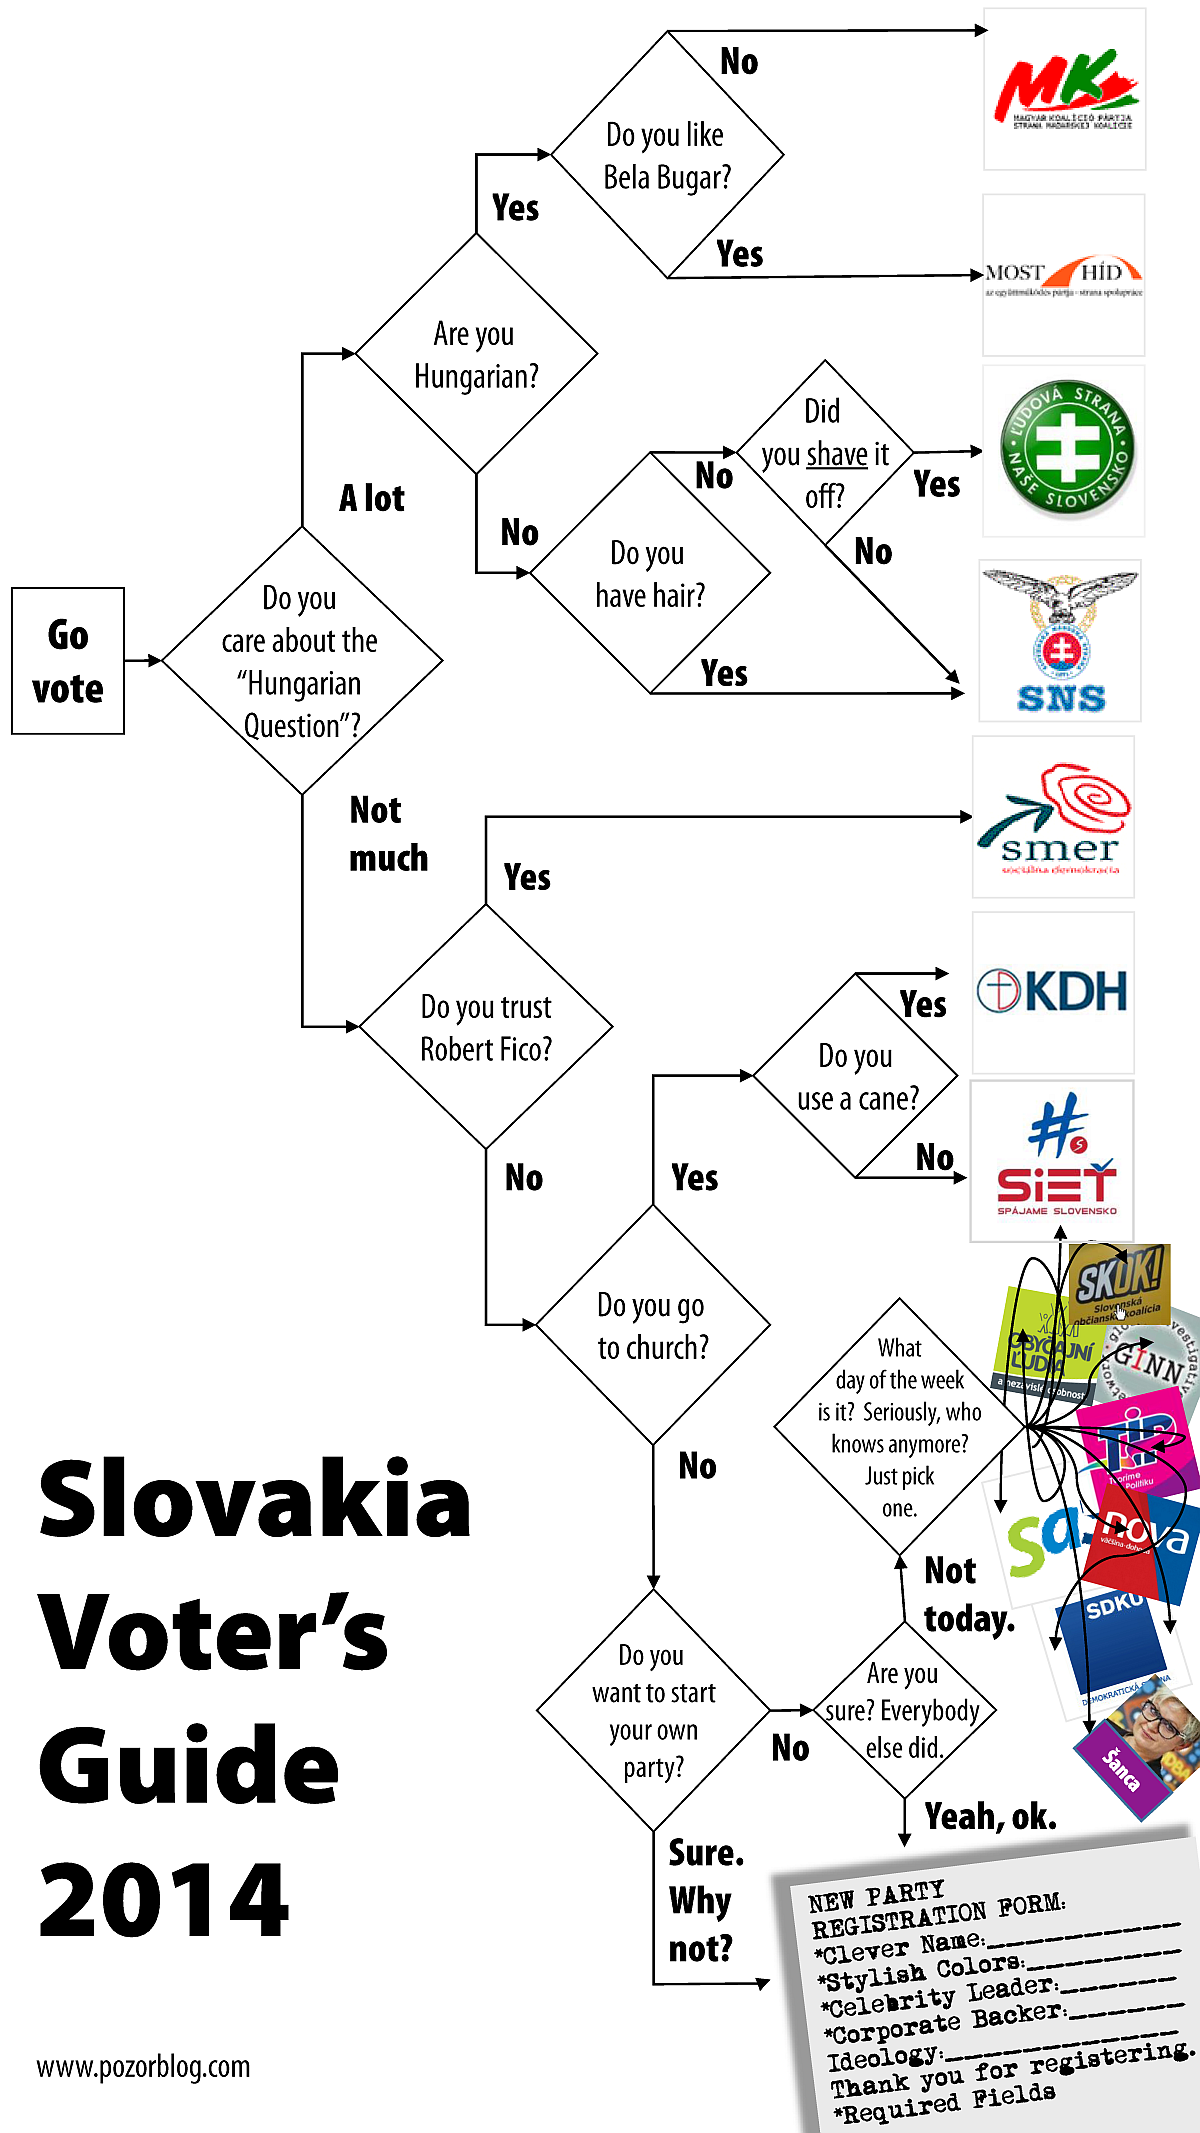 http://www.pozorblog.com/wp-content/uploads/2014/12/slovakia-voting-flowchart-2014-portrait_sm.png